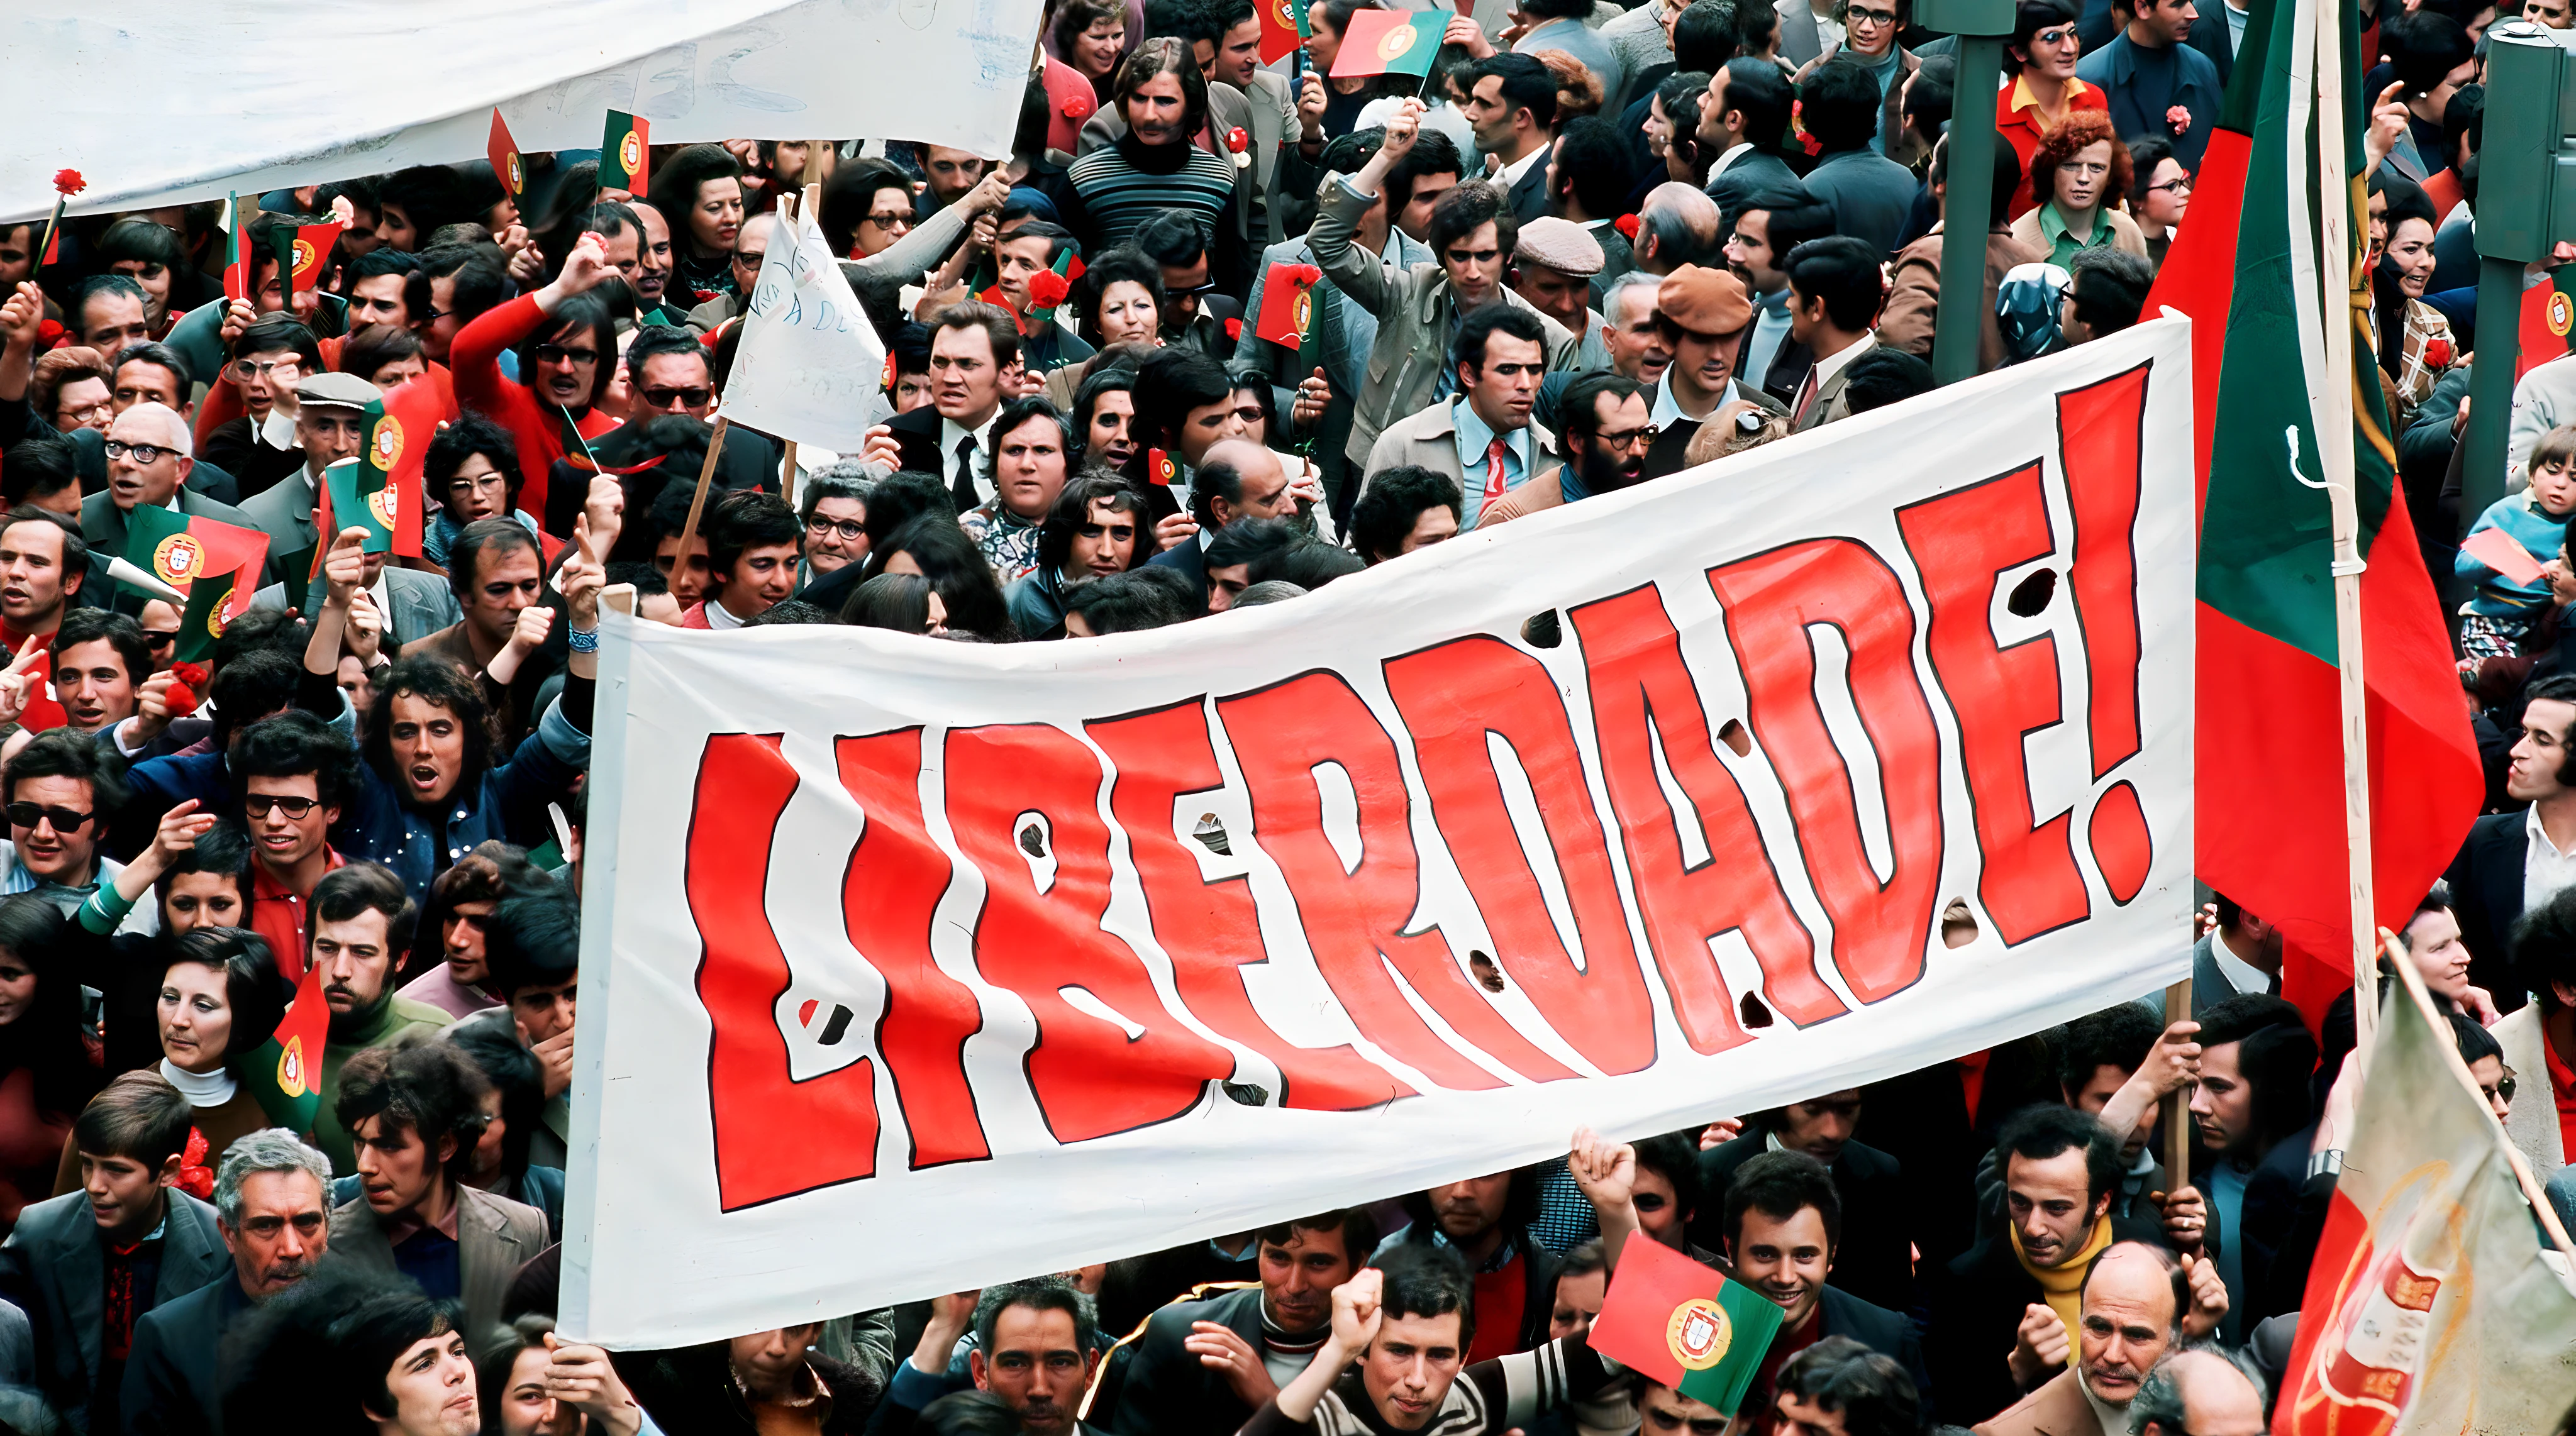 Manifestación en Lisboa, fue la primera vez en 48 años que se permitió una celebración de este tipo en Portugal